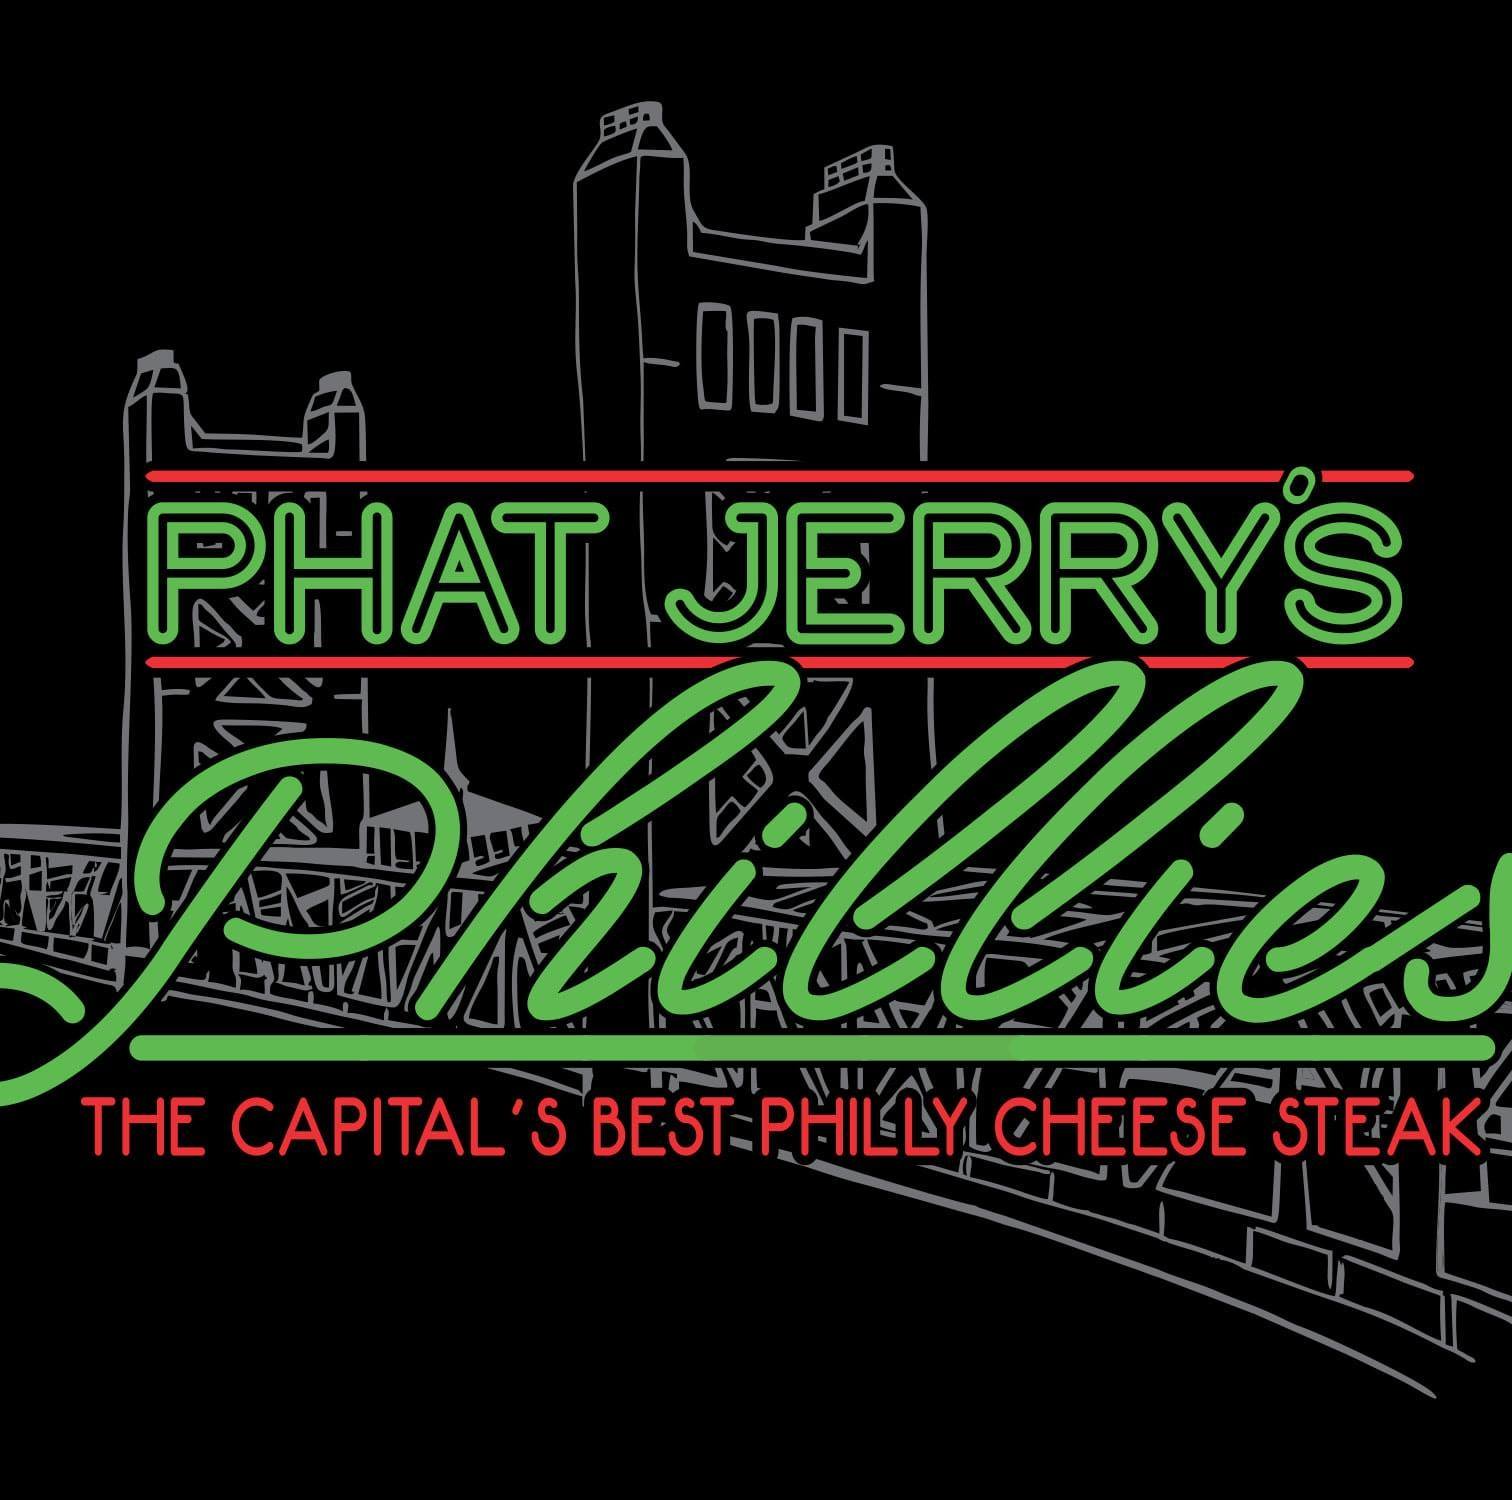 Phat Jerry's Phillies